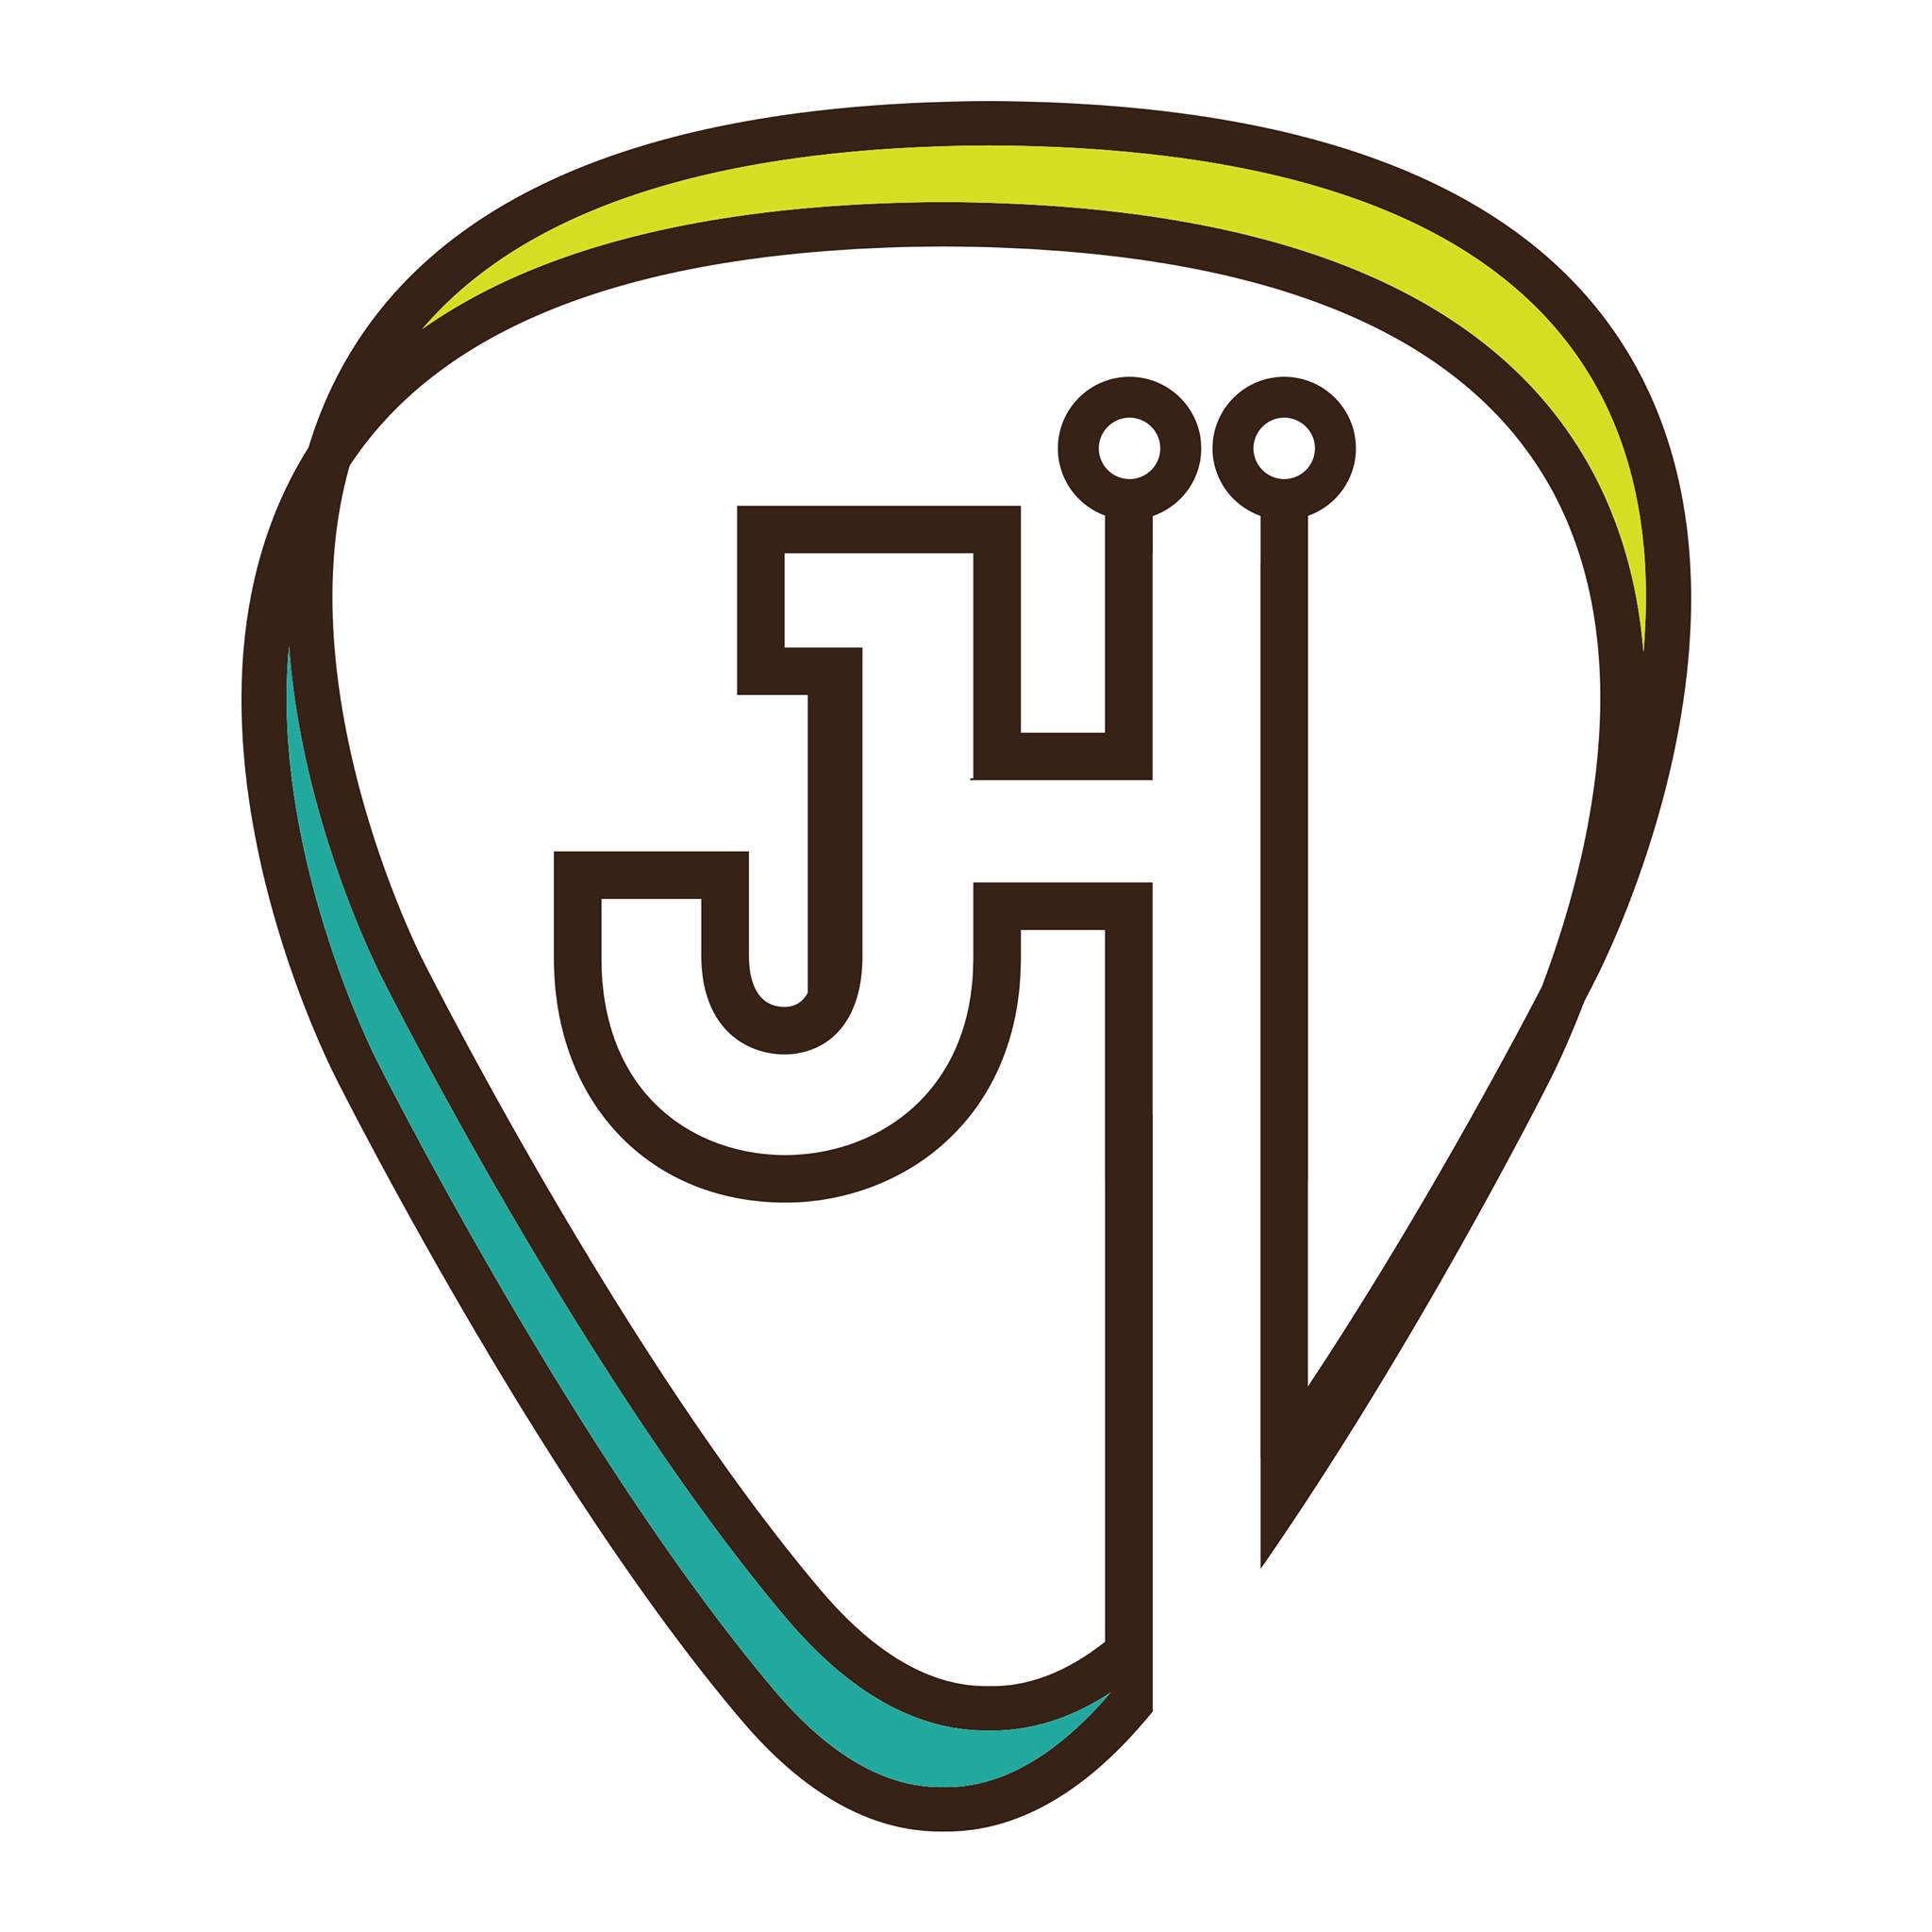 John hart pick logo